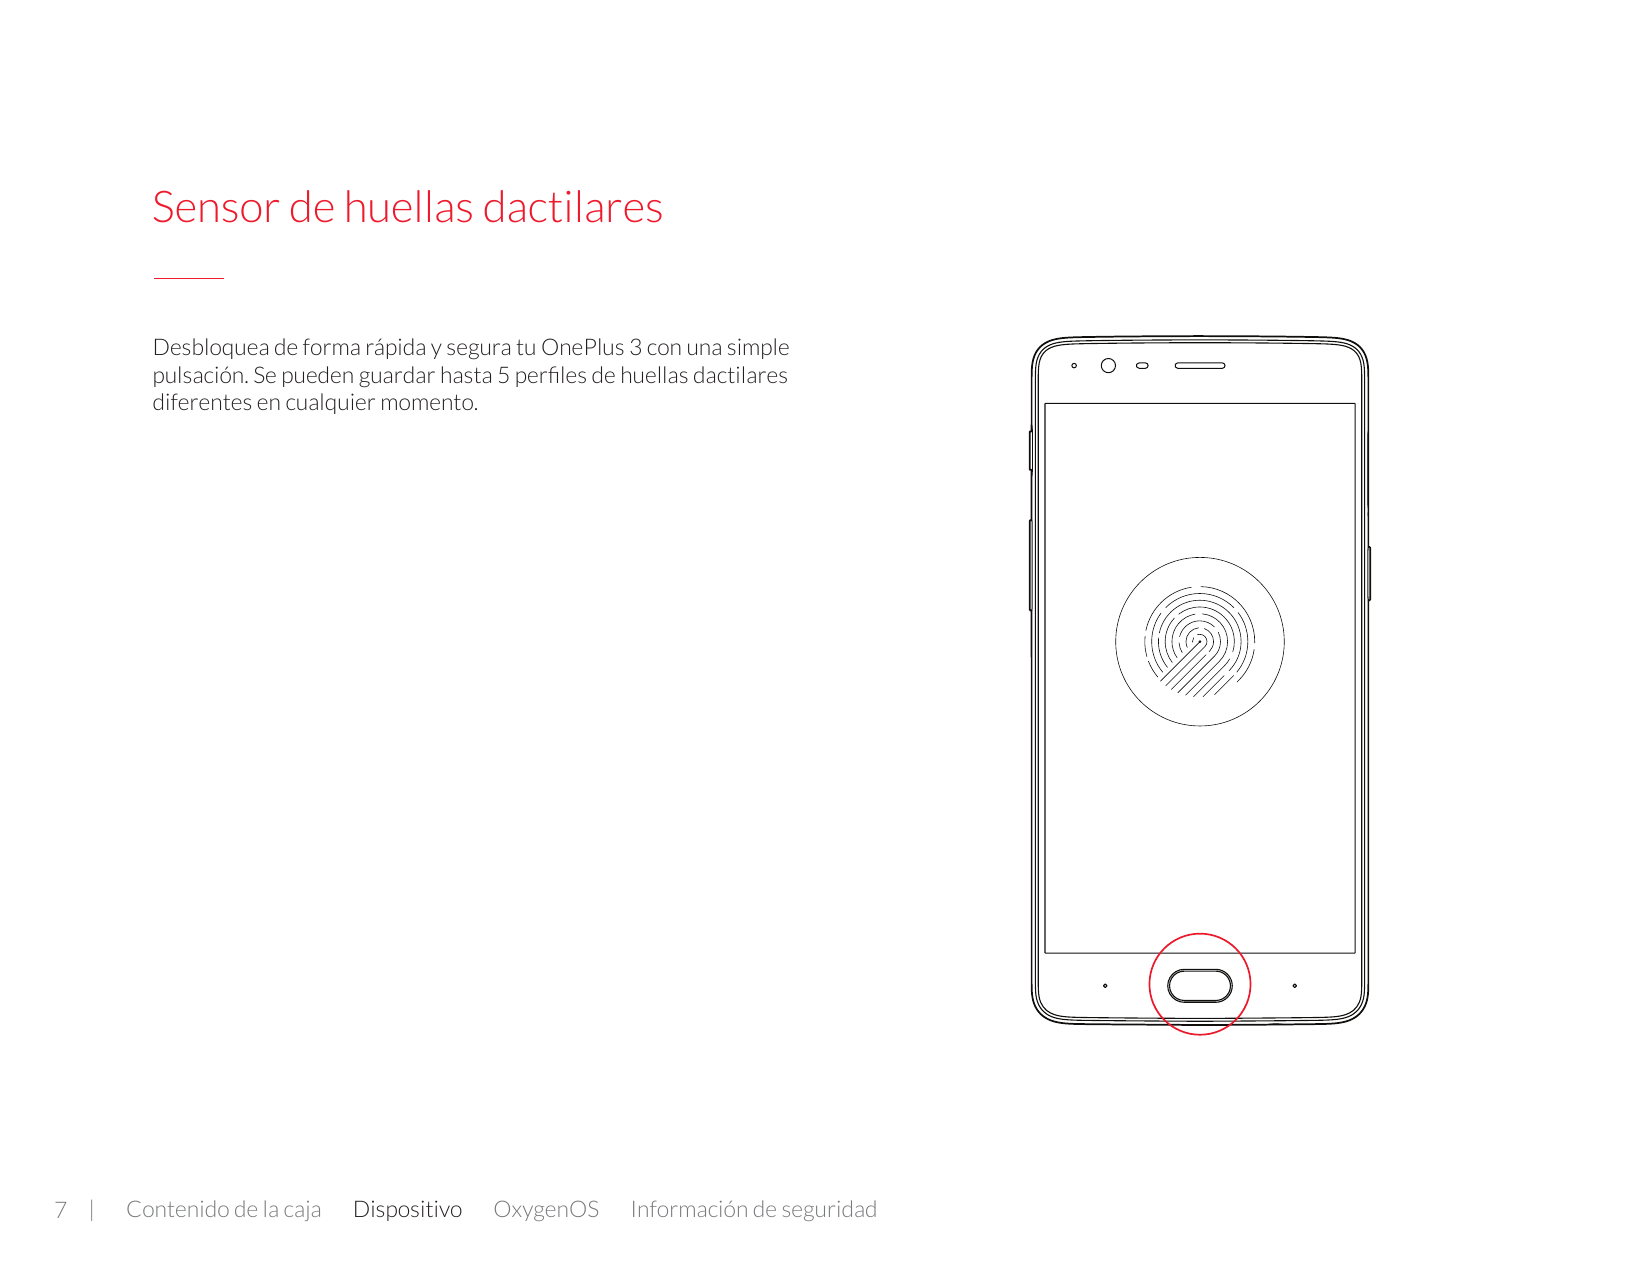 Sensor de huellas dactilaresDesbloquea de forma rápida y segura tu OnePlus 3 con una simplepulsación. Se pueden guardar hasta 5 